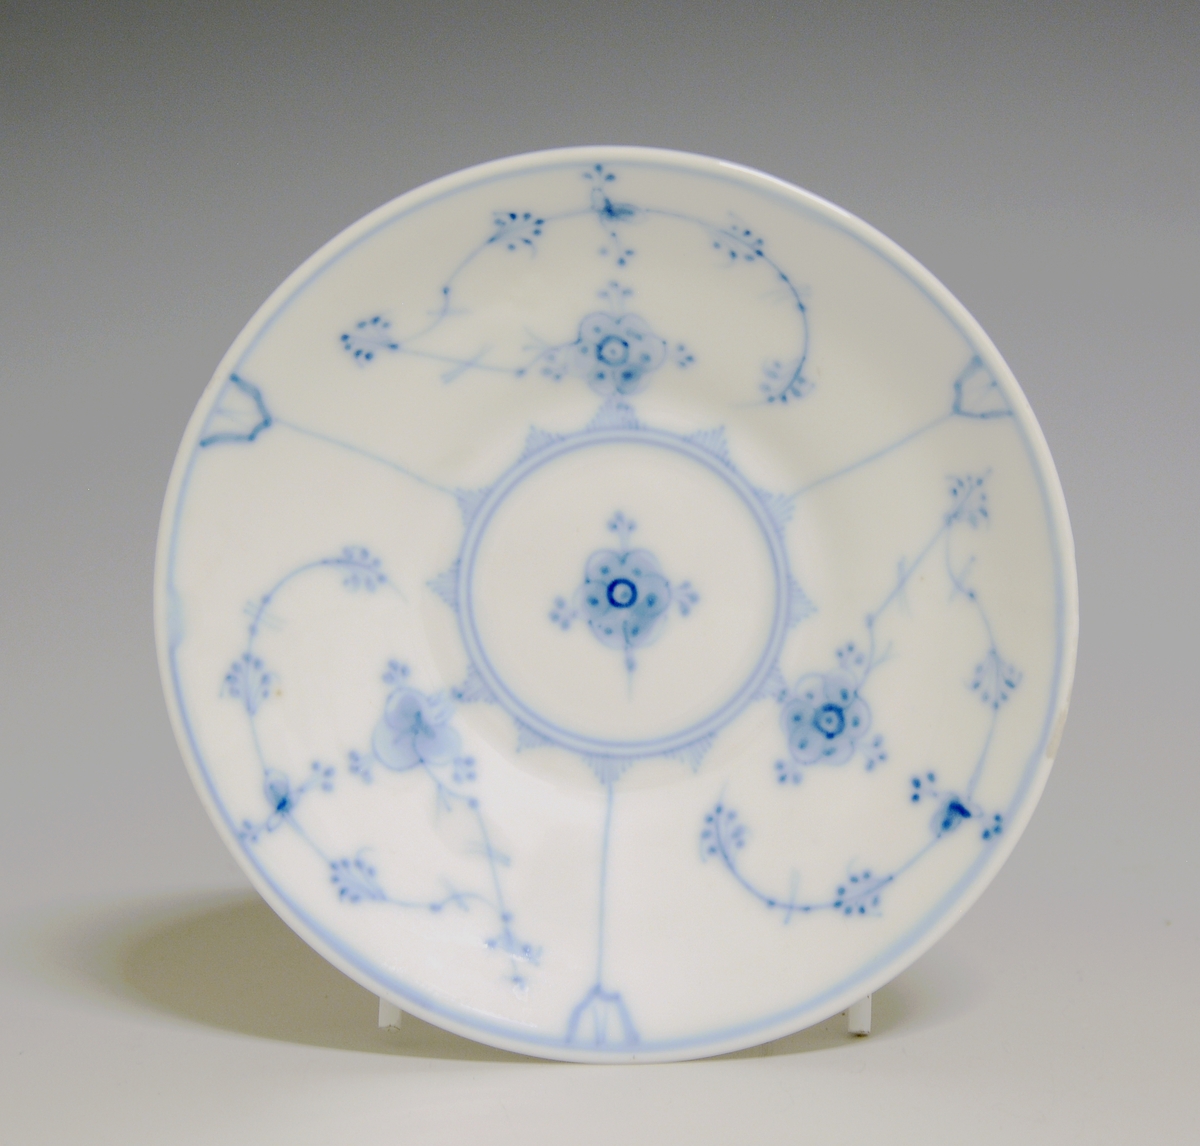 Kaffeskål av porselen med hvit glasur. Dekorert med stråmønster i blått.

Modellnr: 314.3, tilhører kaffe- og theservice 901.
Finnes i priskuranten for 1900 og 1909